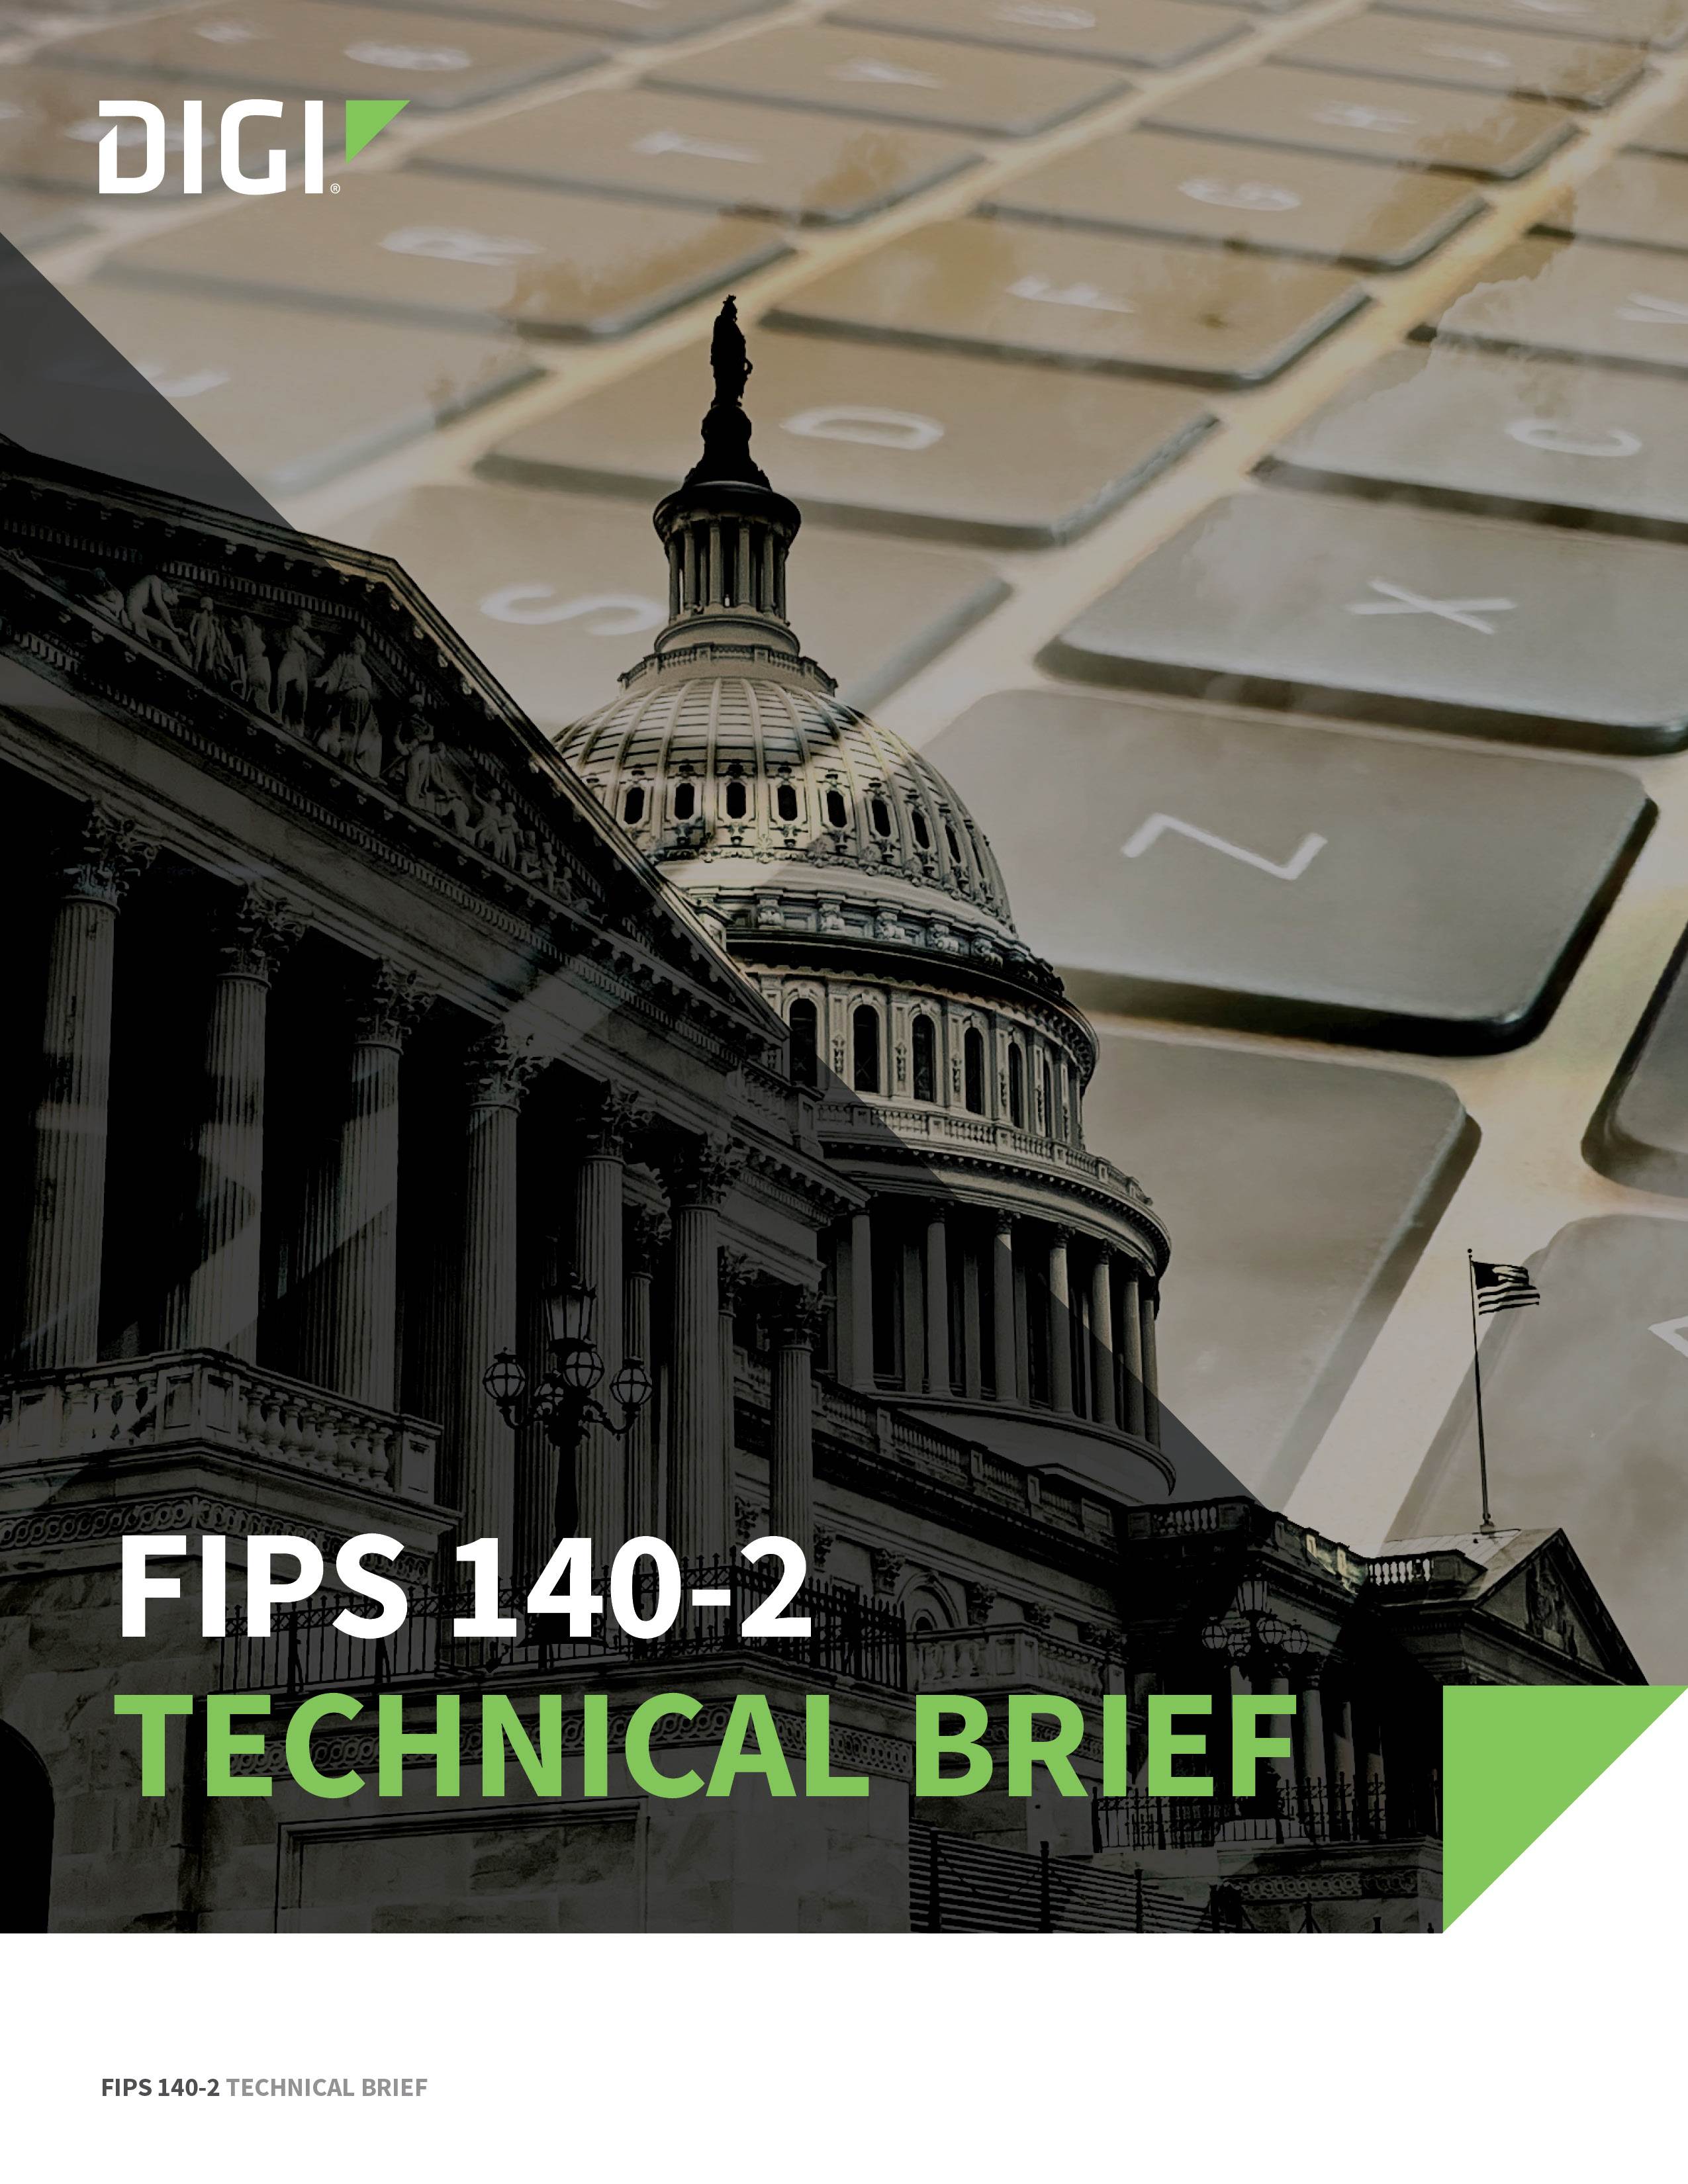 Page de couverture de la fiche technique FIPS 140-2